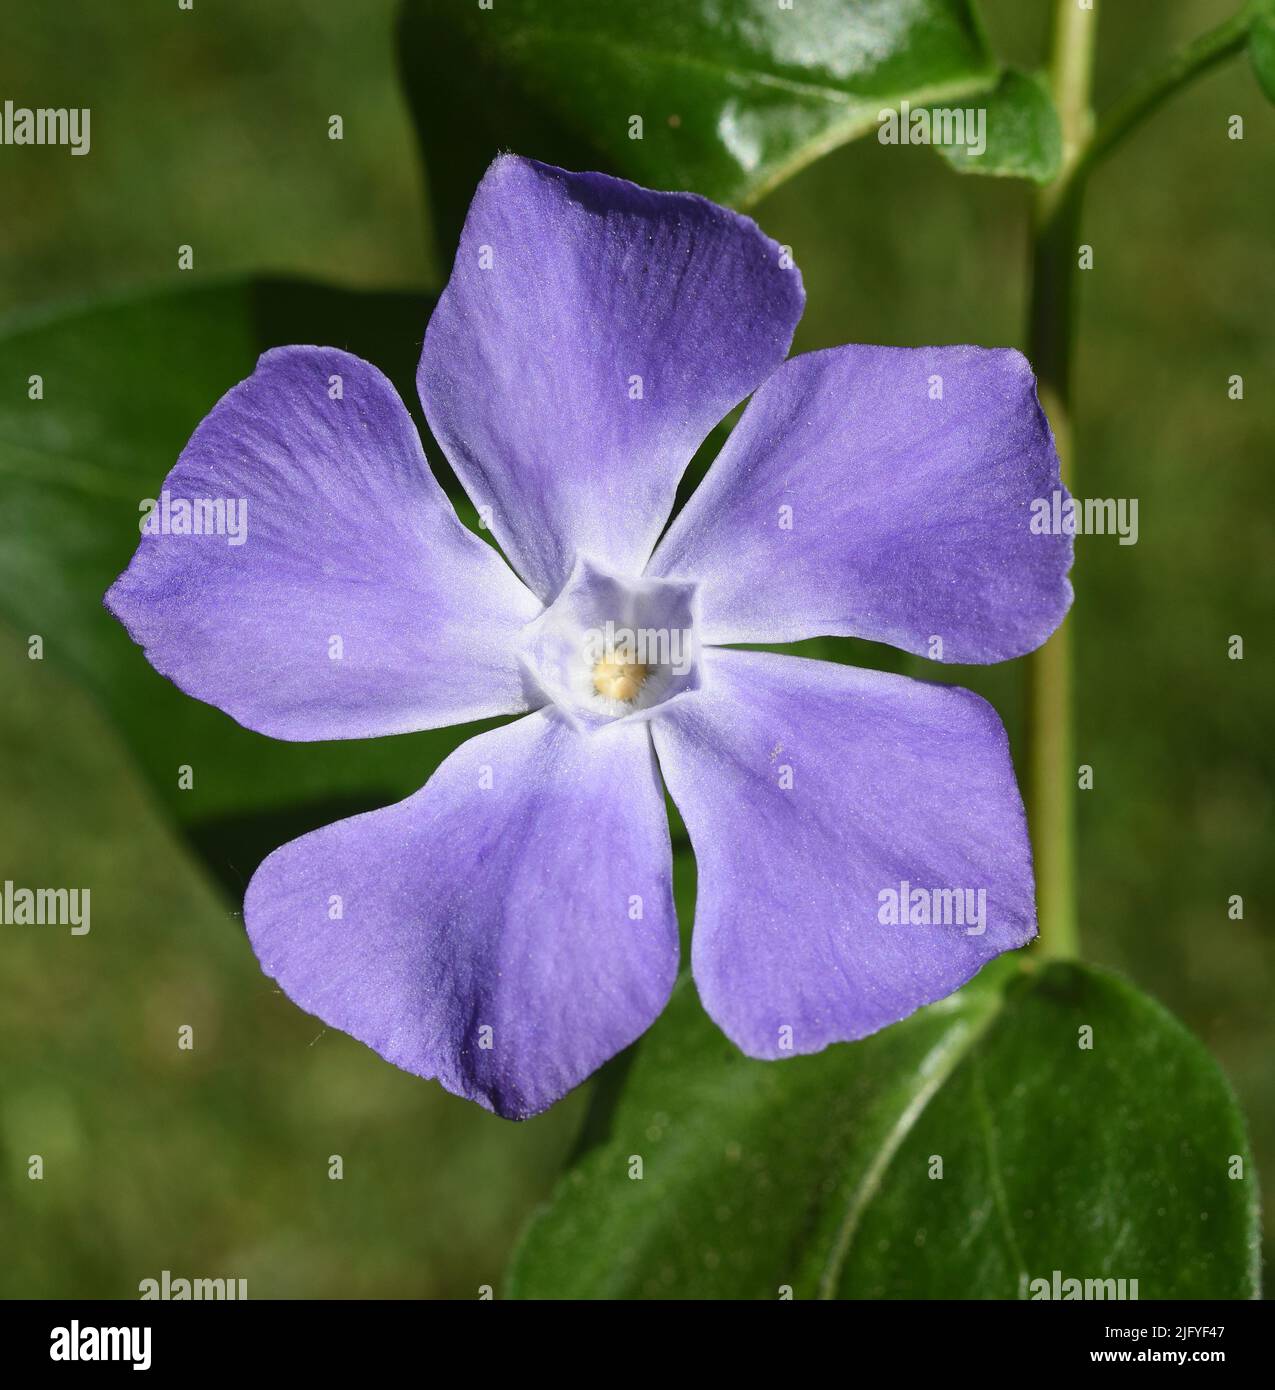 Immergruen, Vinca Major, ist eine wichtige Heilpflanze mit Blauen Blueten und wird auch als Bodendecker verwendet. Periwinkle, Vinca Major, ist ein imp Stockfoto